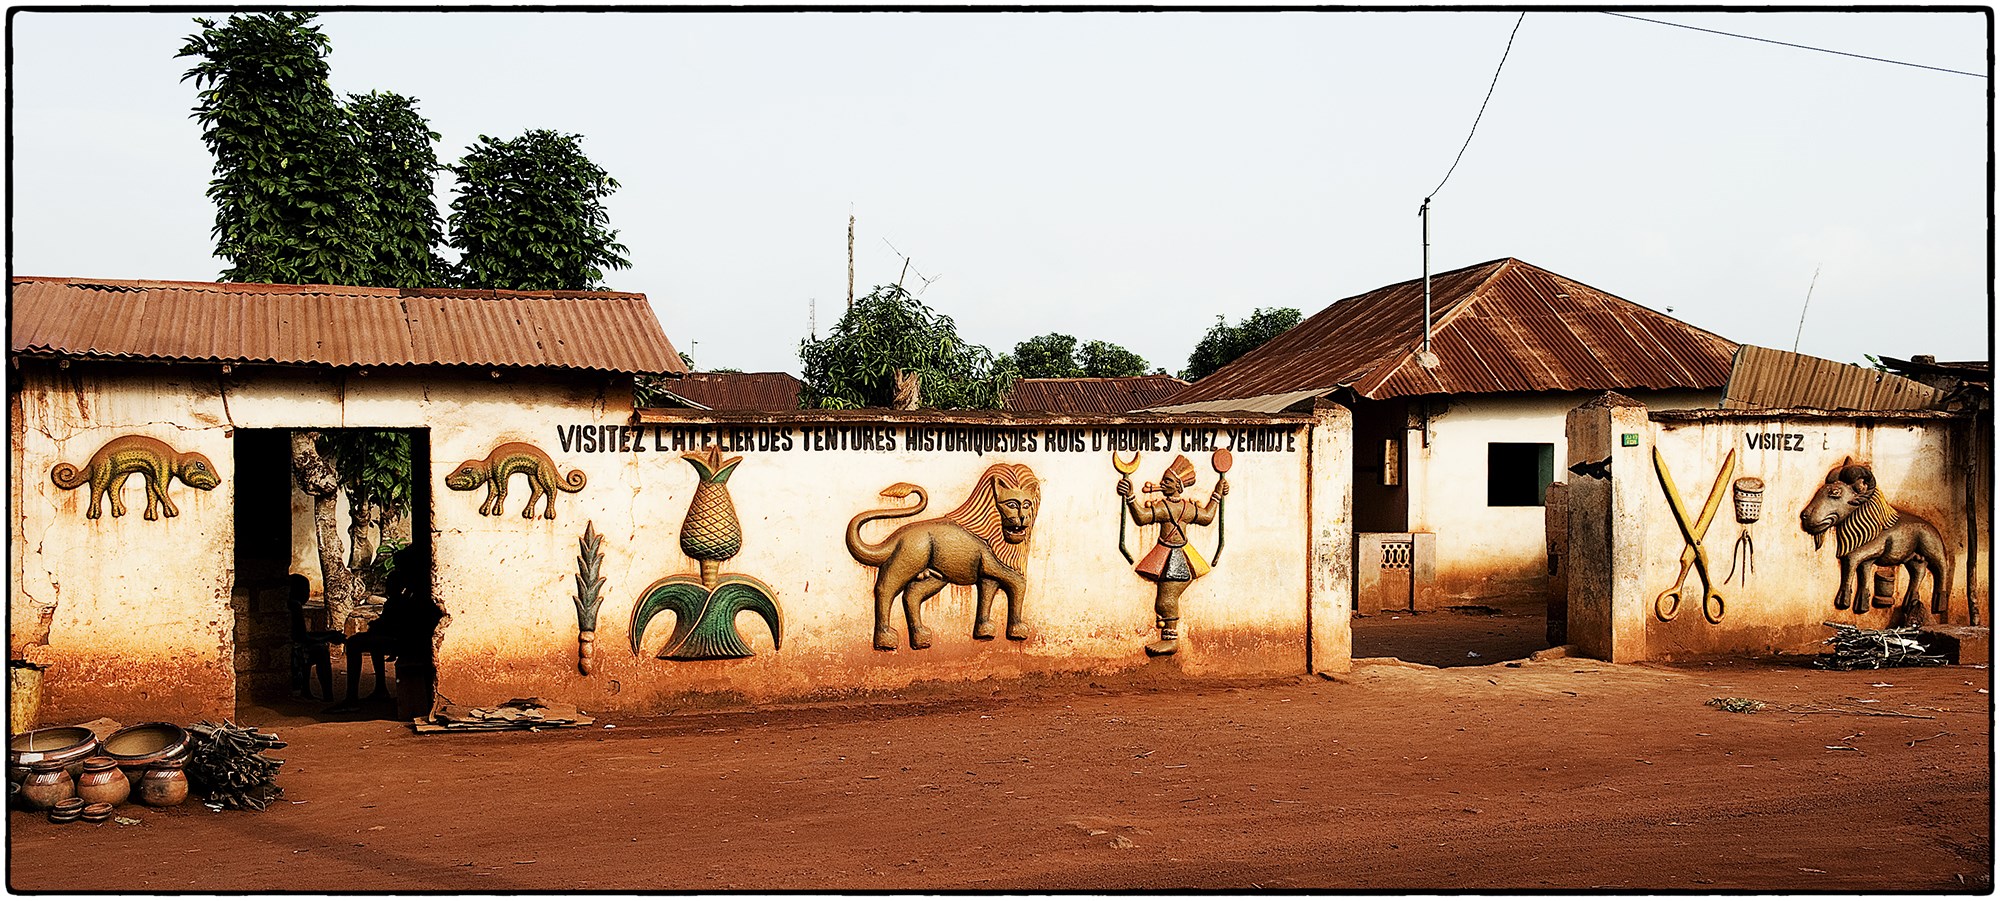 Les Palais Royaux d’Abomey | Express Tourisme Bénin